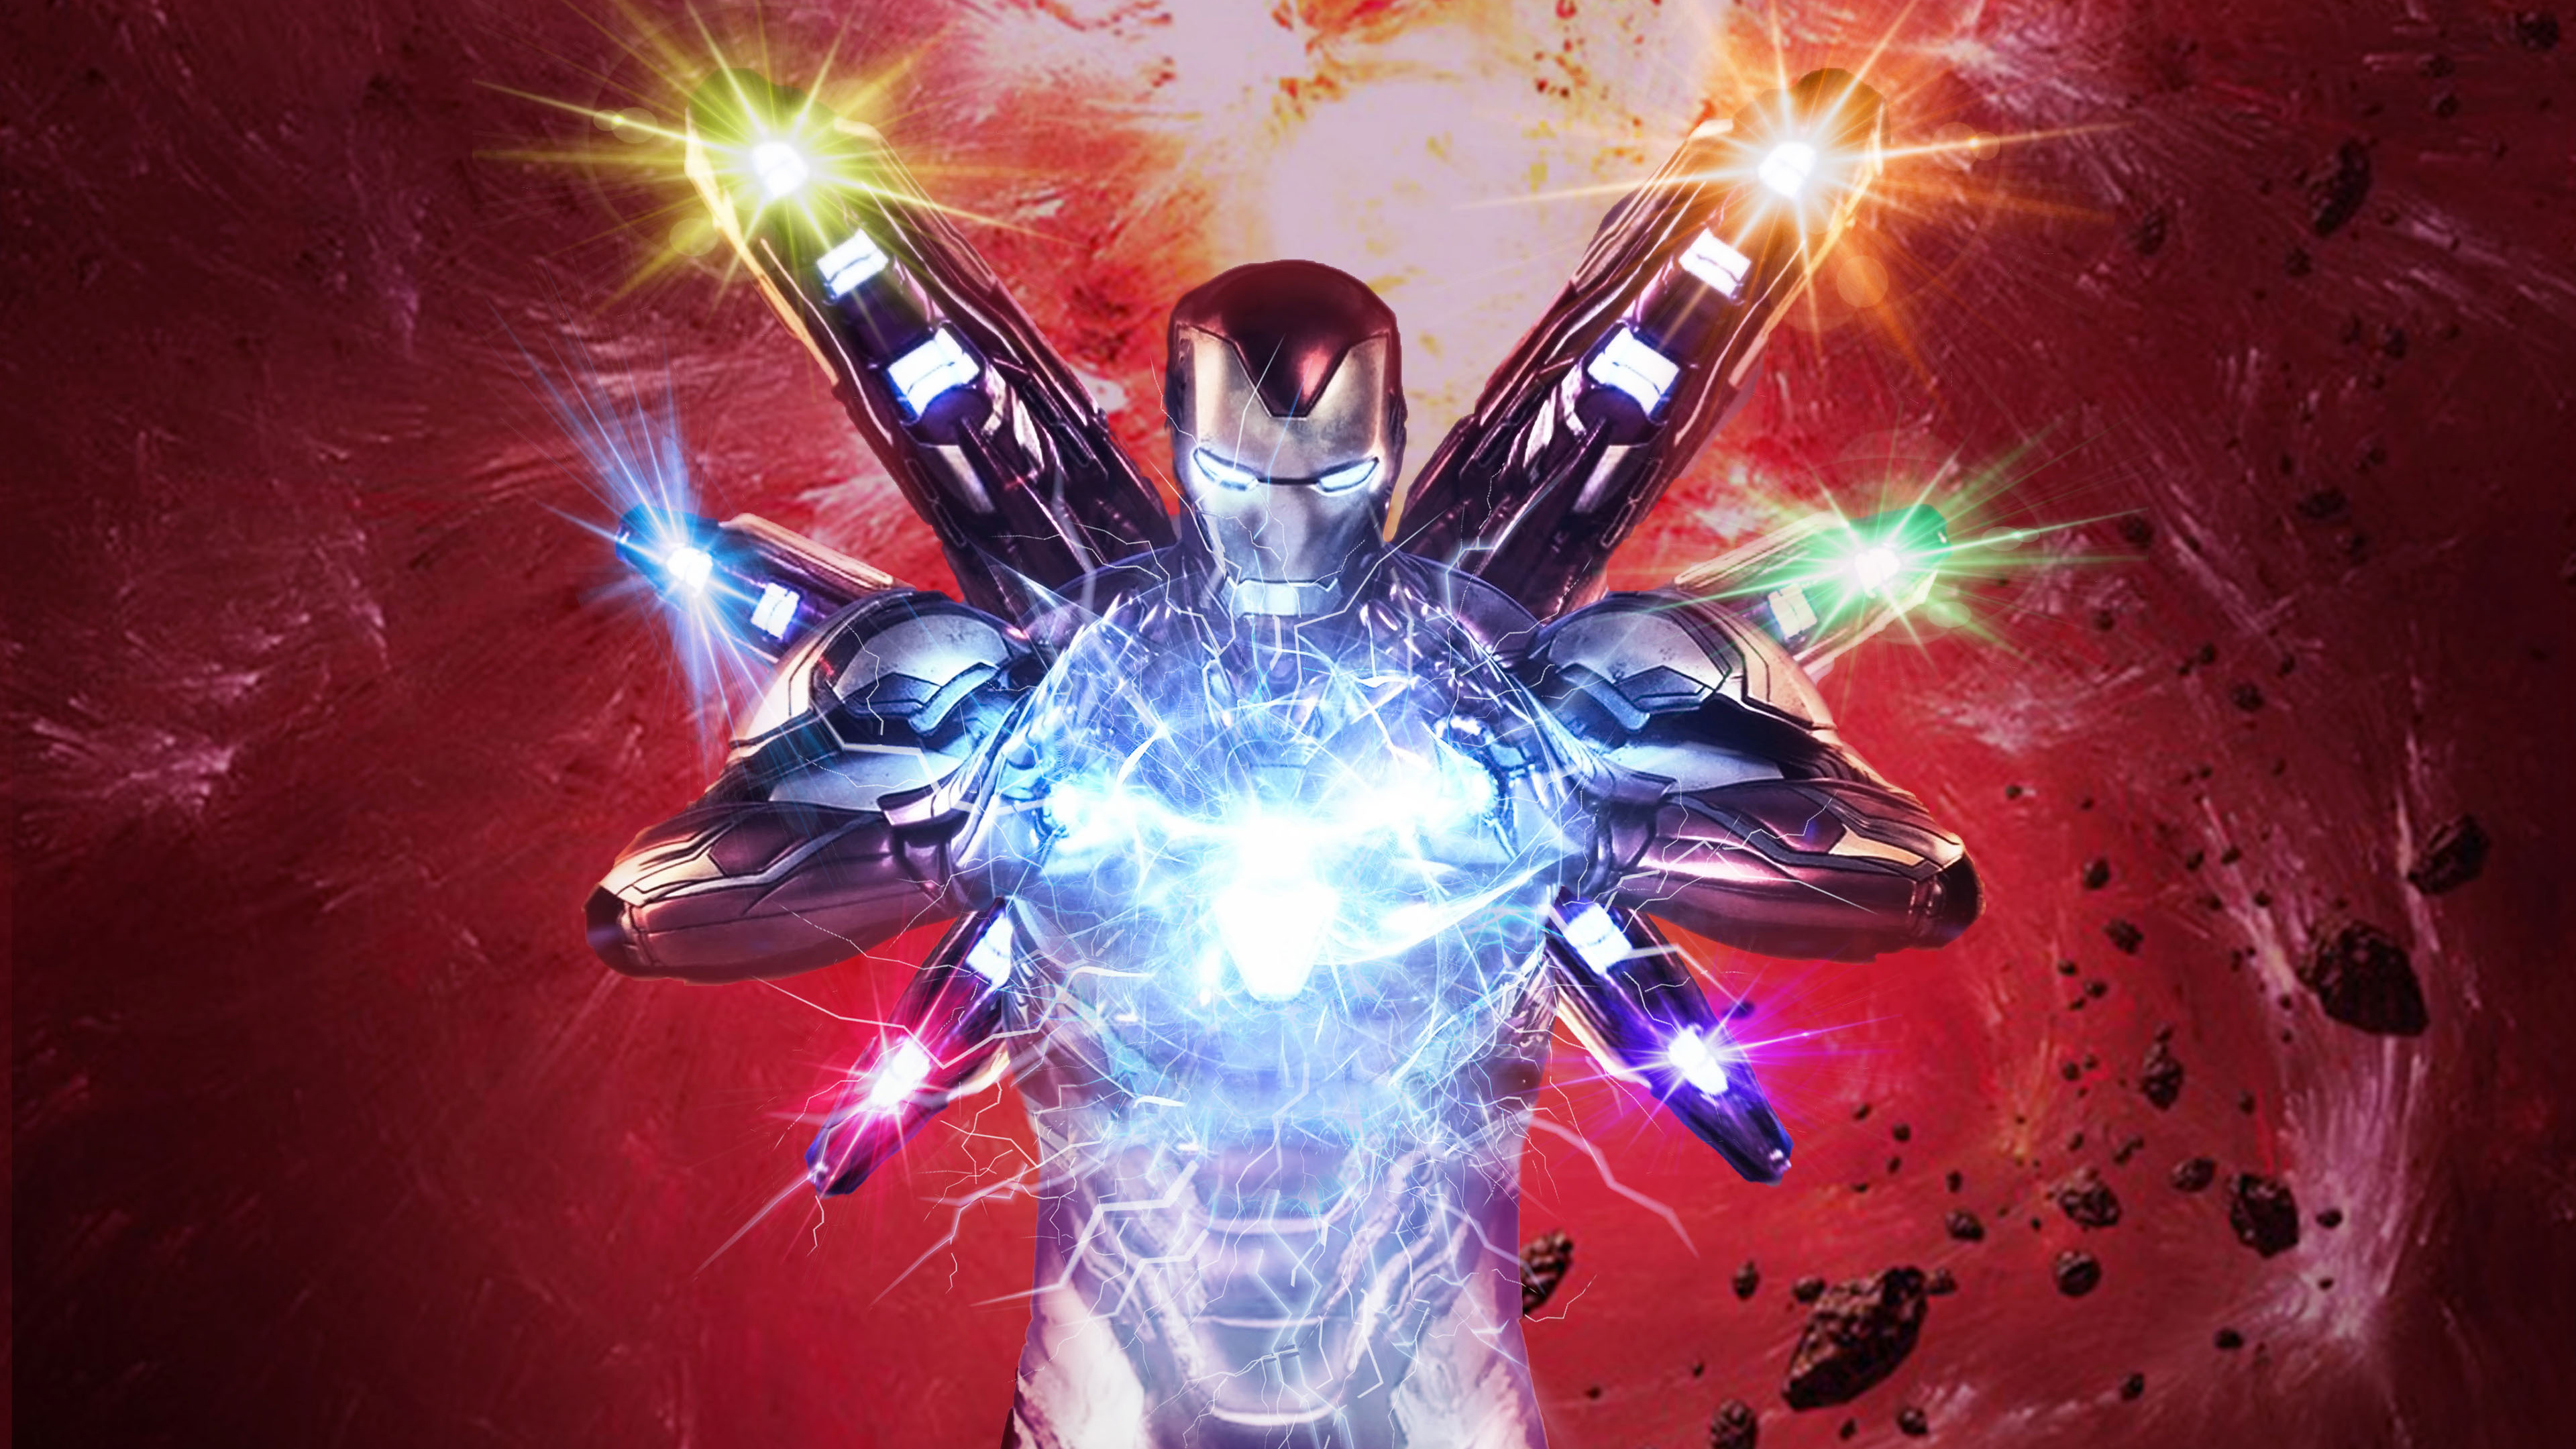 Download mobile wallpaper Iron Man, Avengers, Movie, Tony Stark, The Avengers, Avengers Endgame for free.